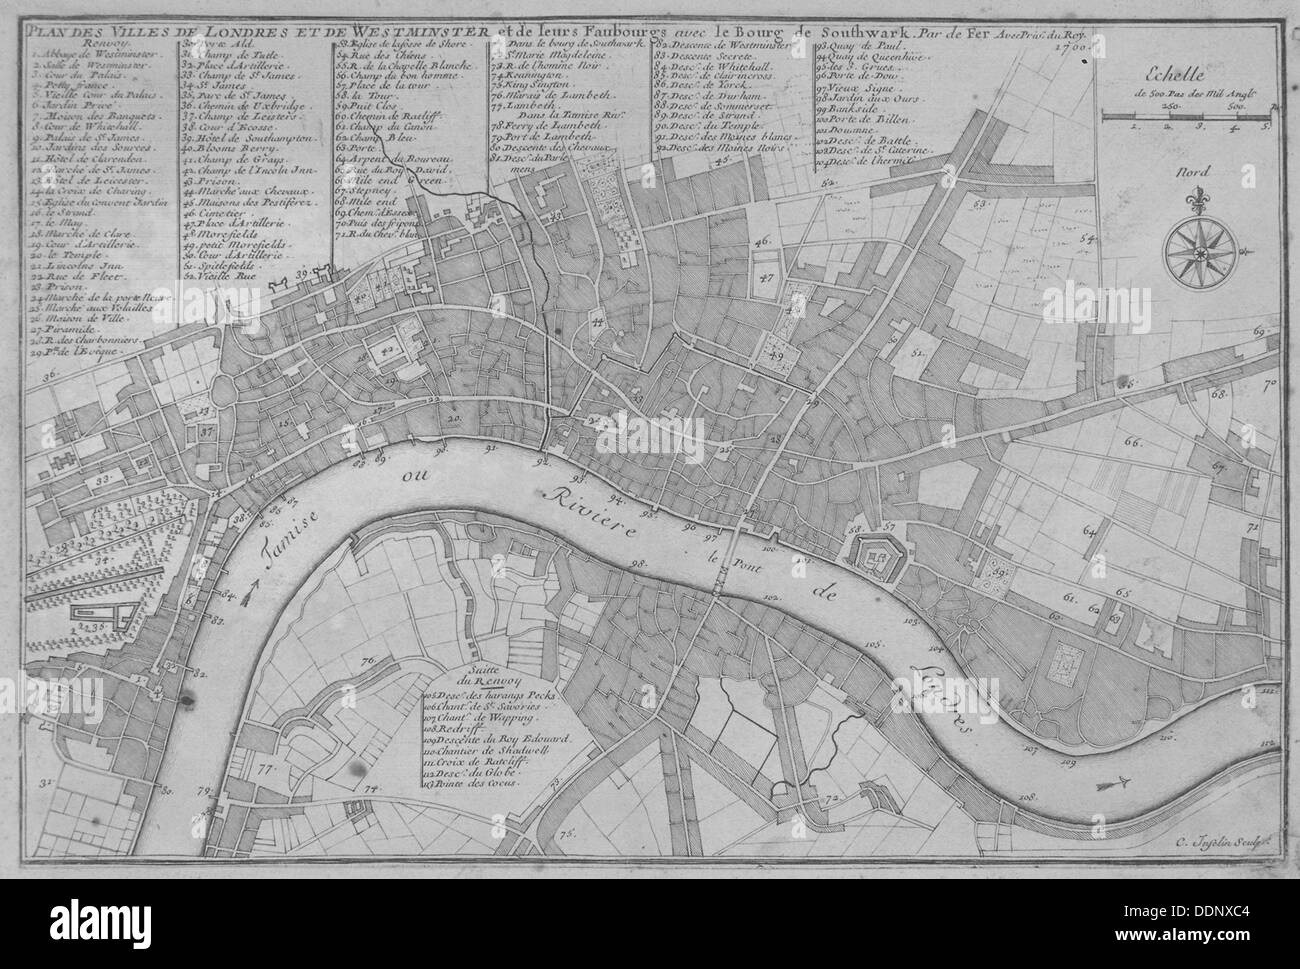 Karte von der City of London, Themse, die City of Westminster und Umgebung, 1700. Künstler: C Inselin Stockfoto